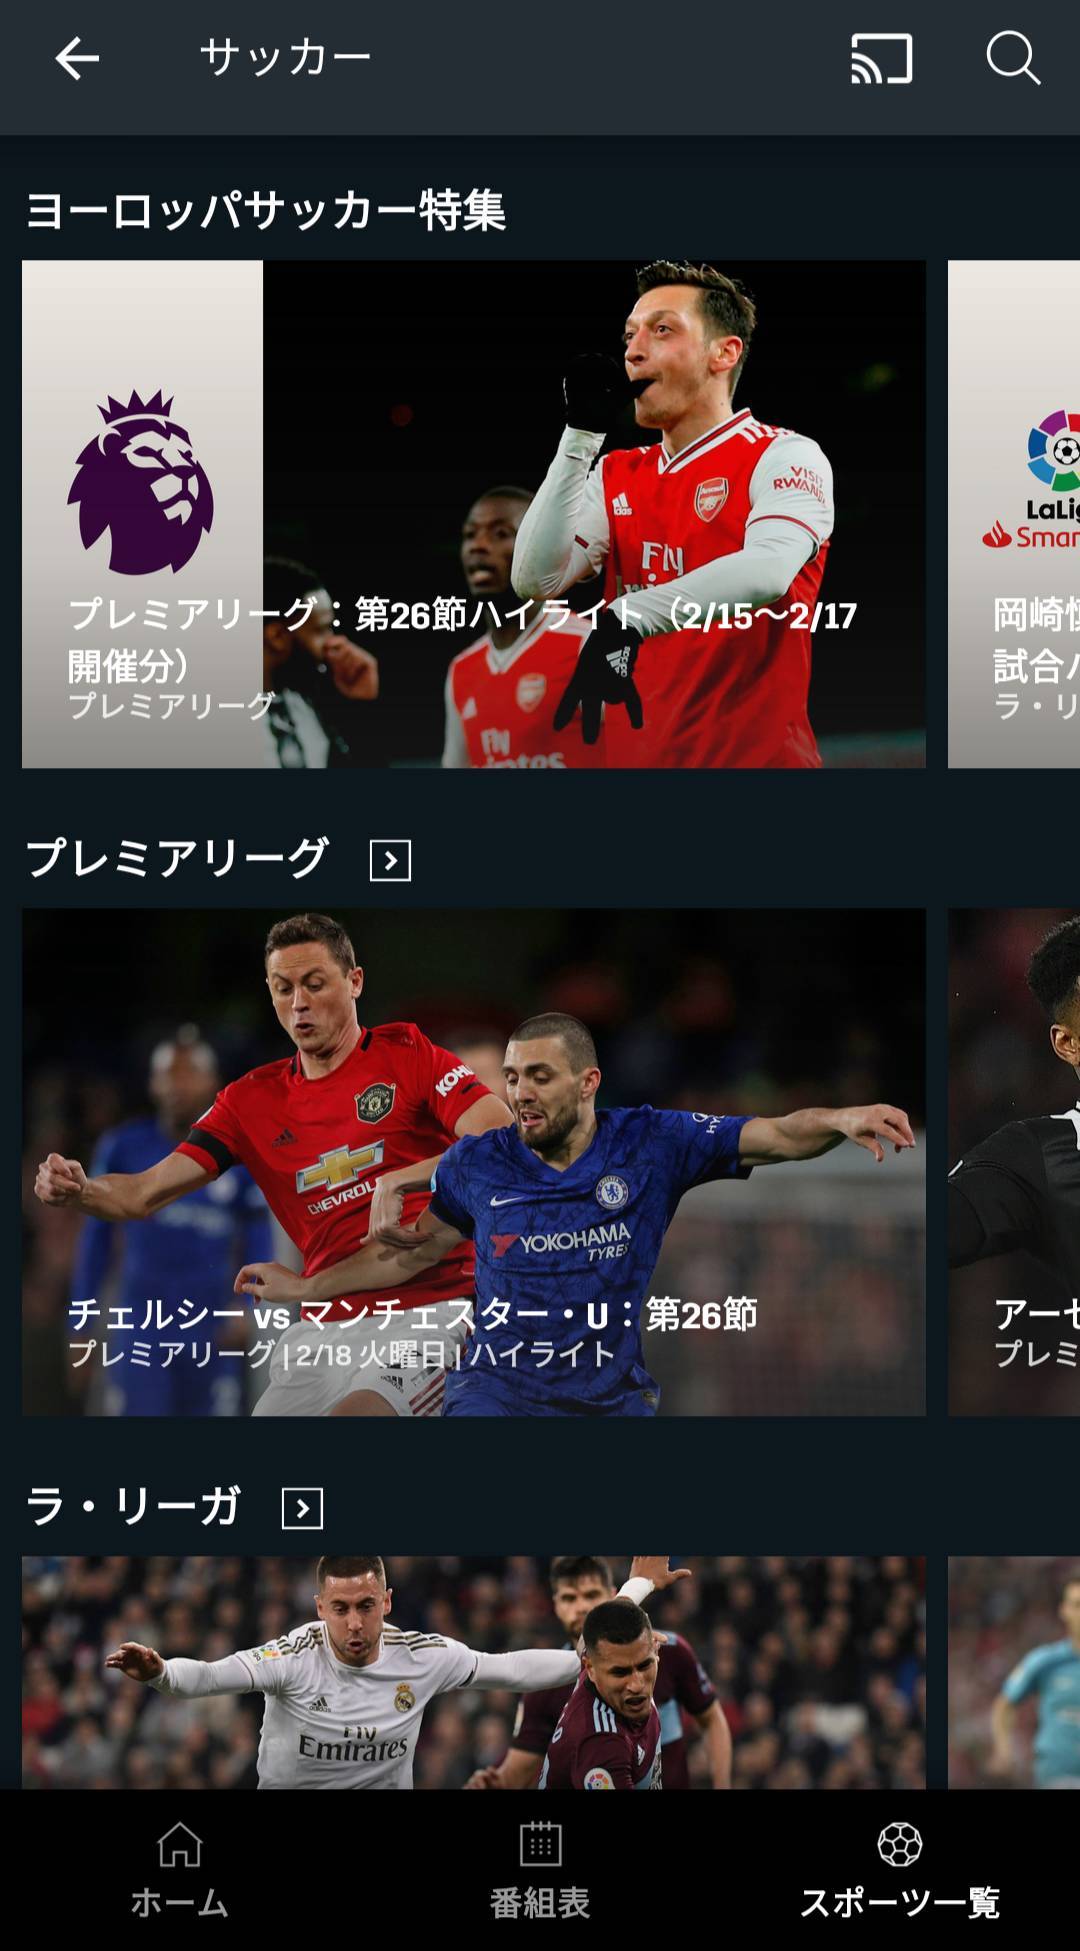 国内サッカー Jリーグのネット中継をスマホで観る方法6つ 無料あり の画像 5枚目 Appliv Topics